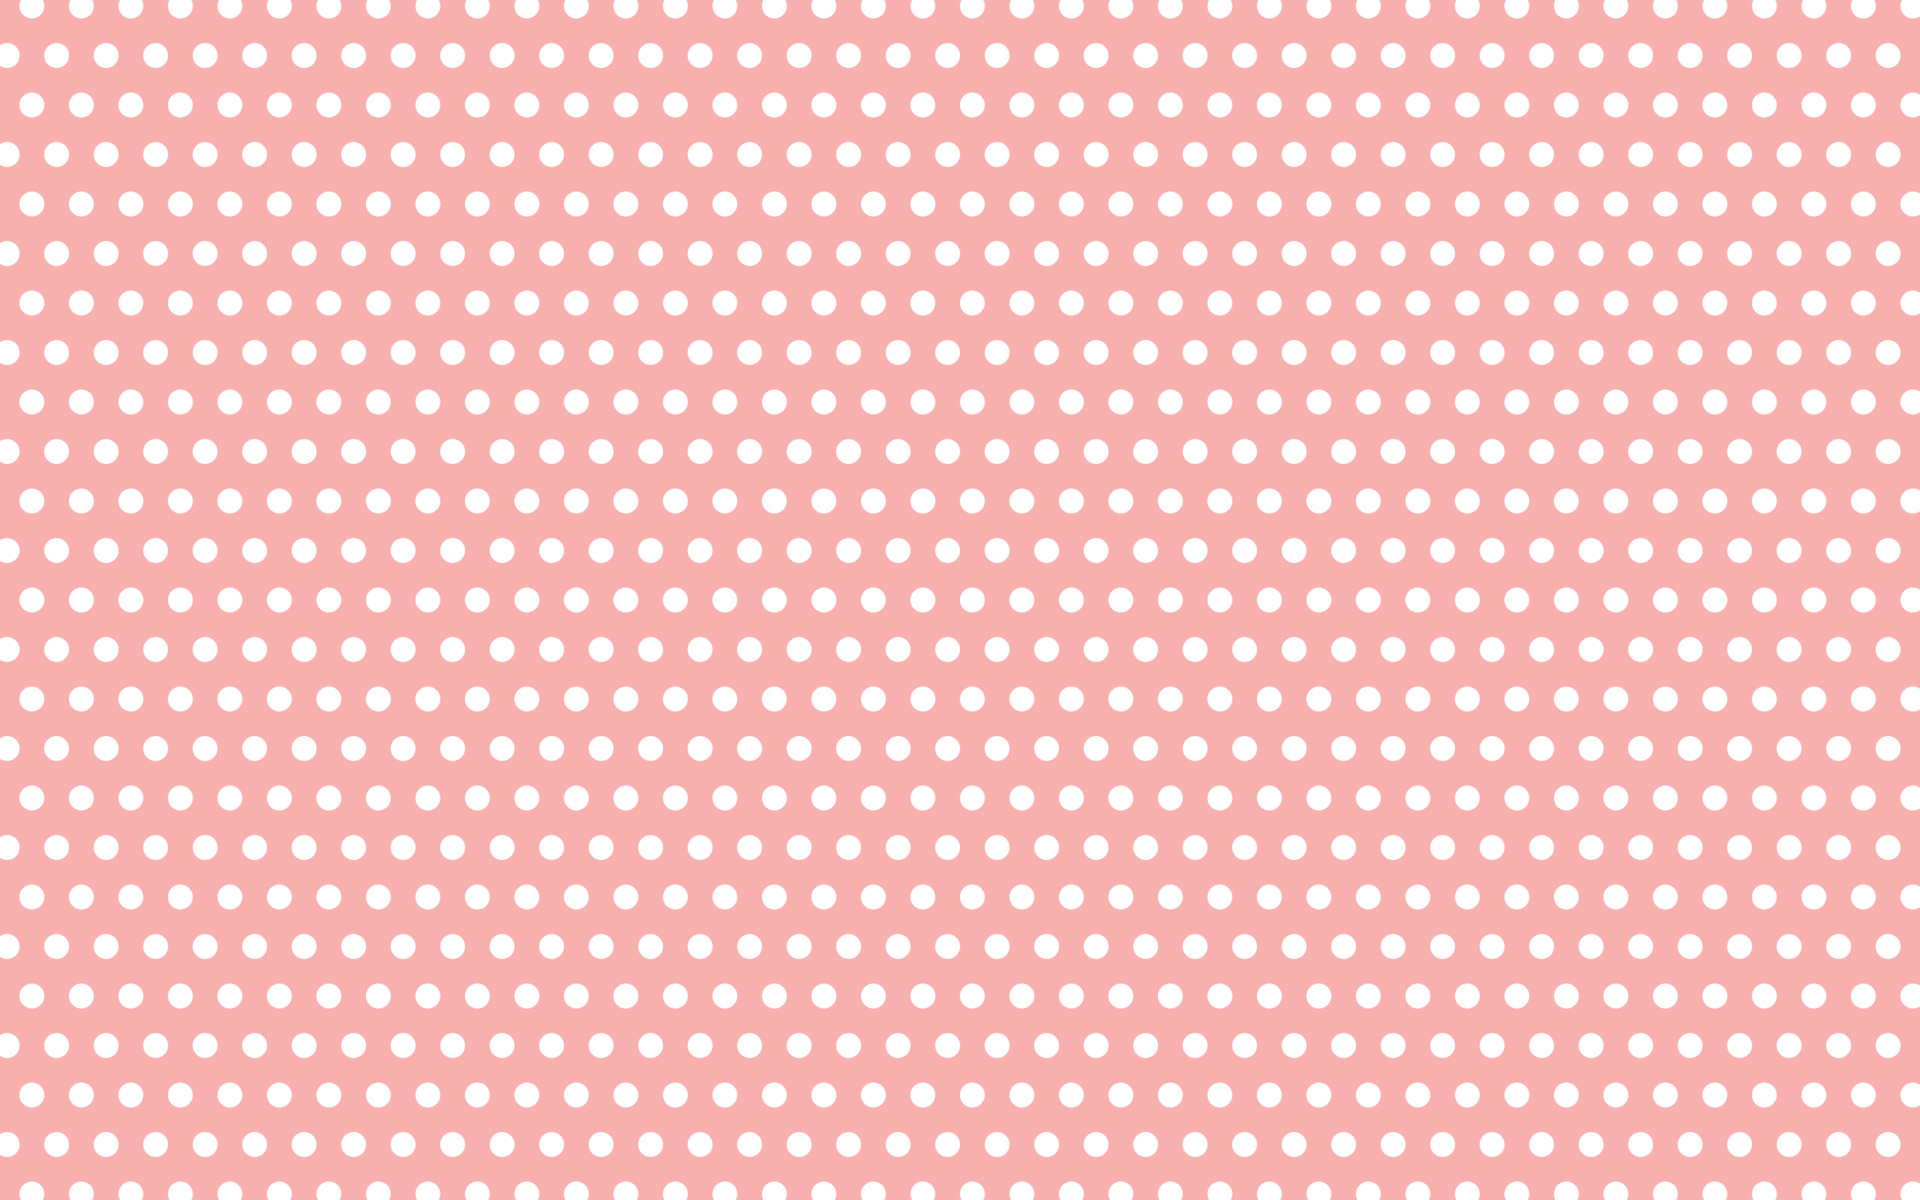 Khám phá 95+ hình ảnh pink dots background - thpthoangvanthu.edu.vn